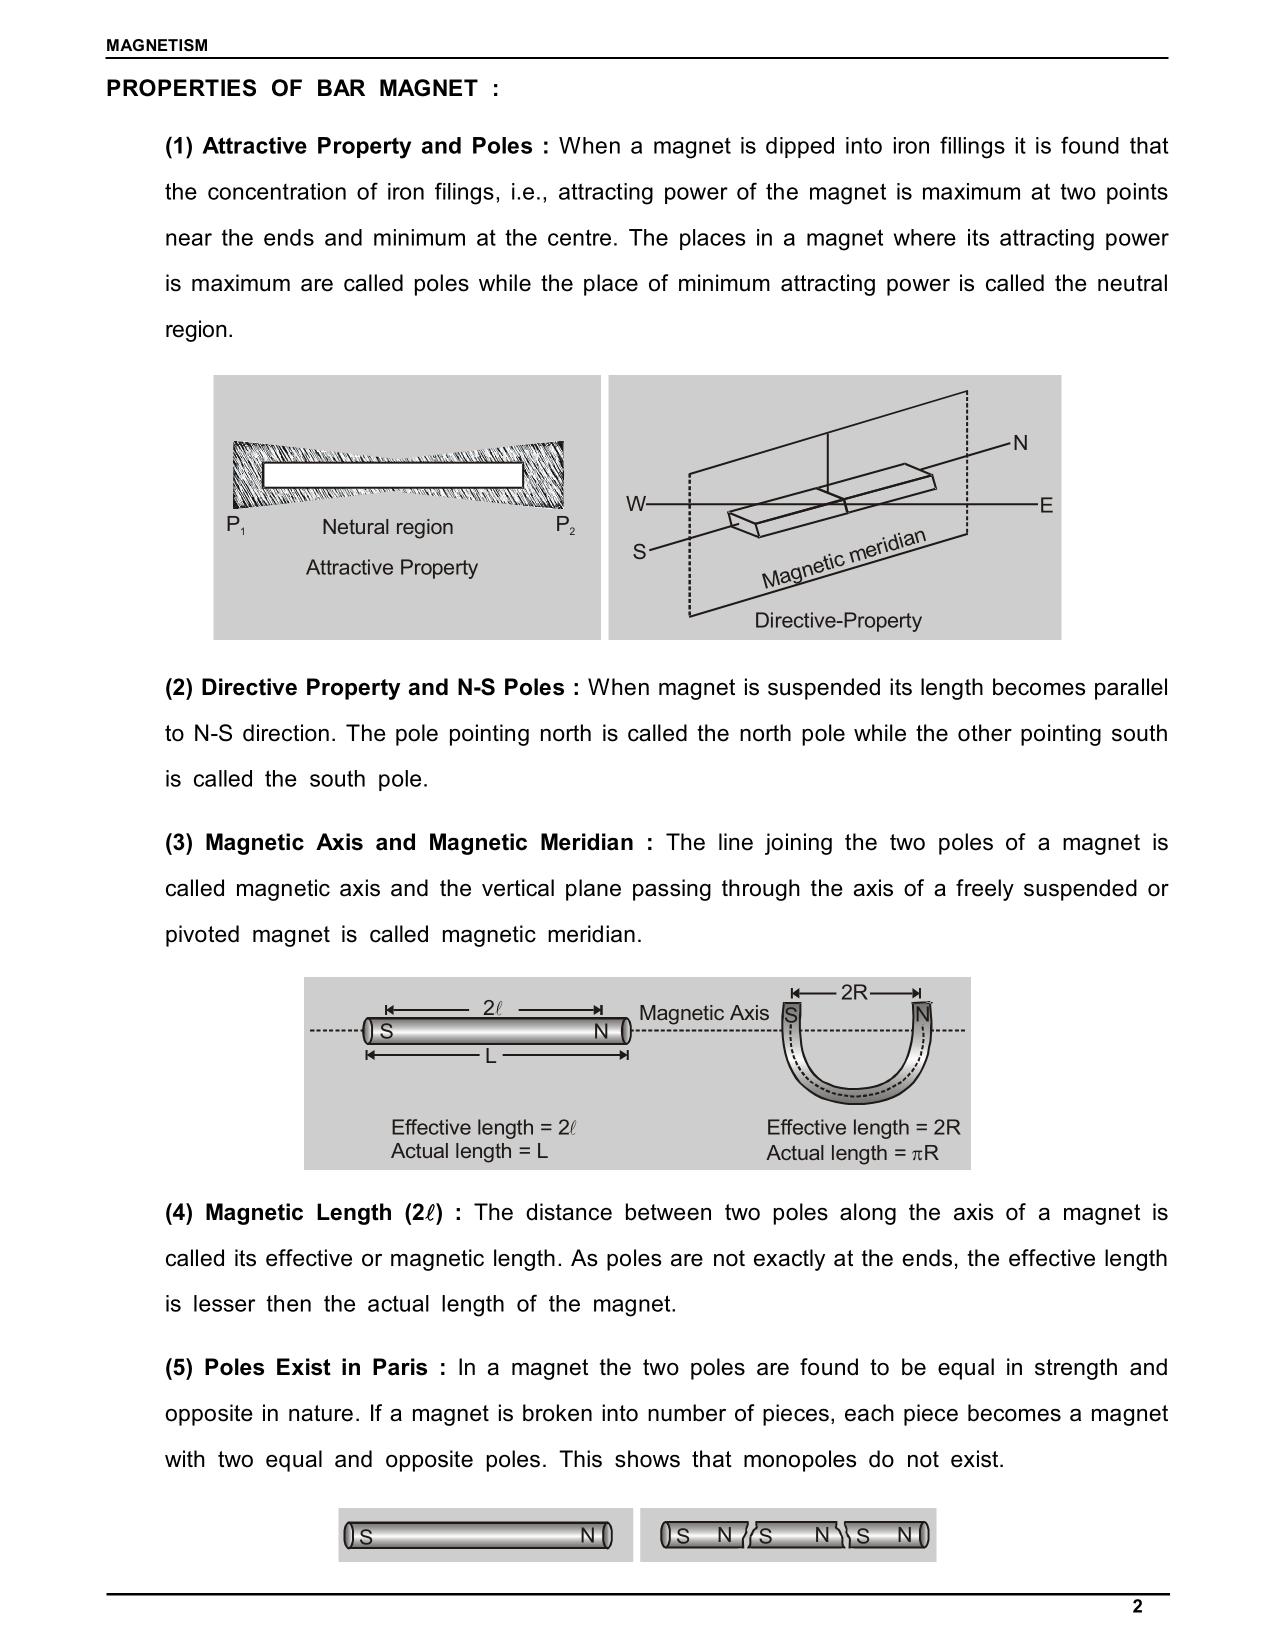 Properties of Bar Magnet class 12